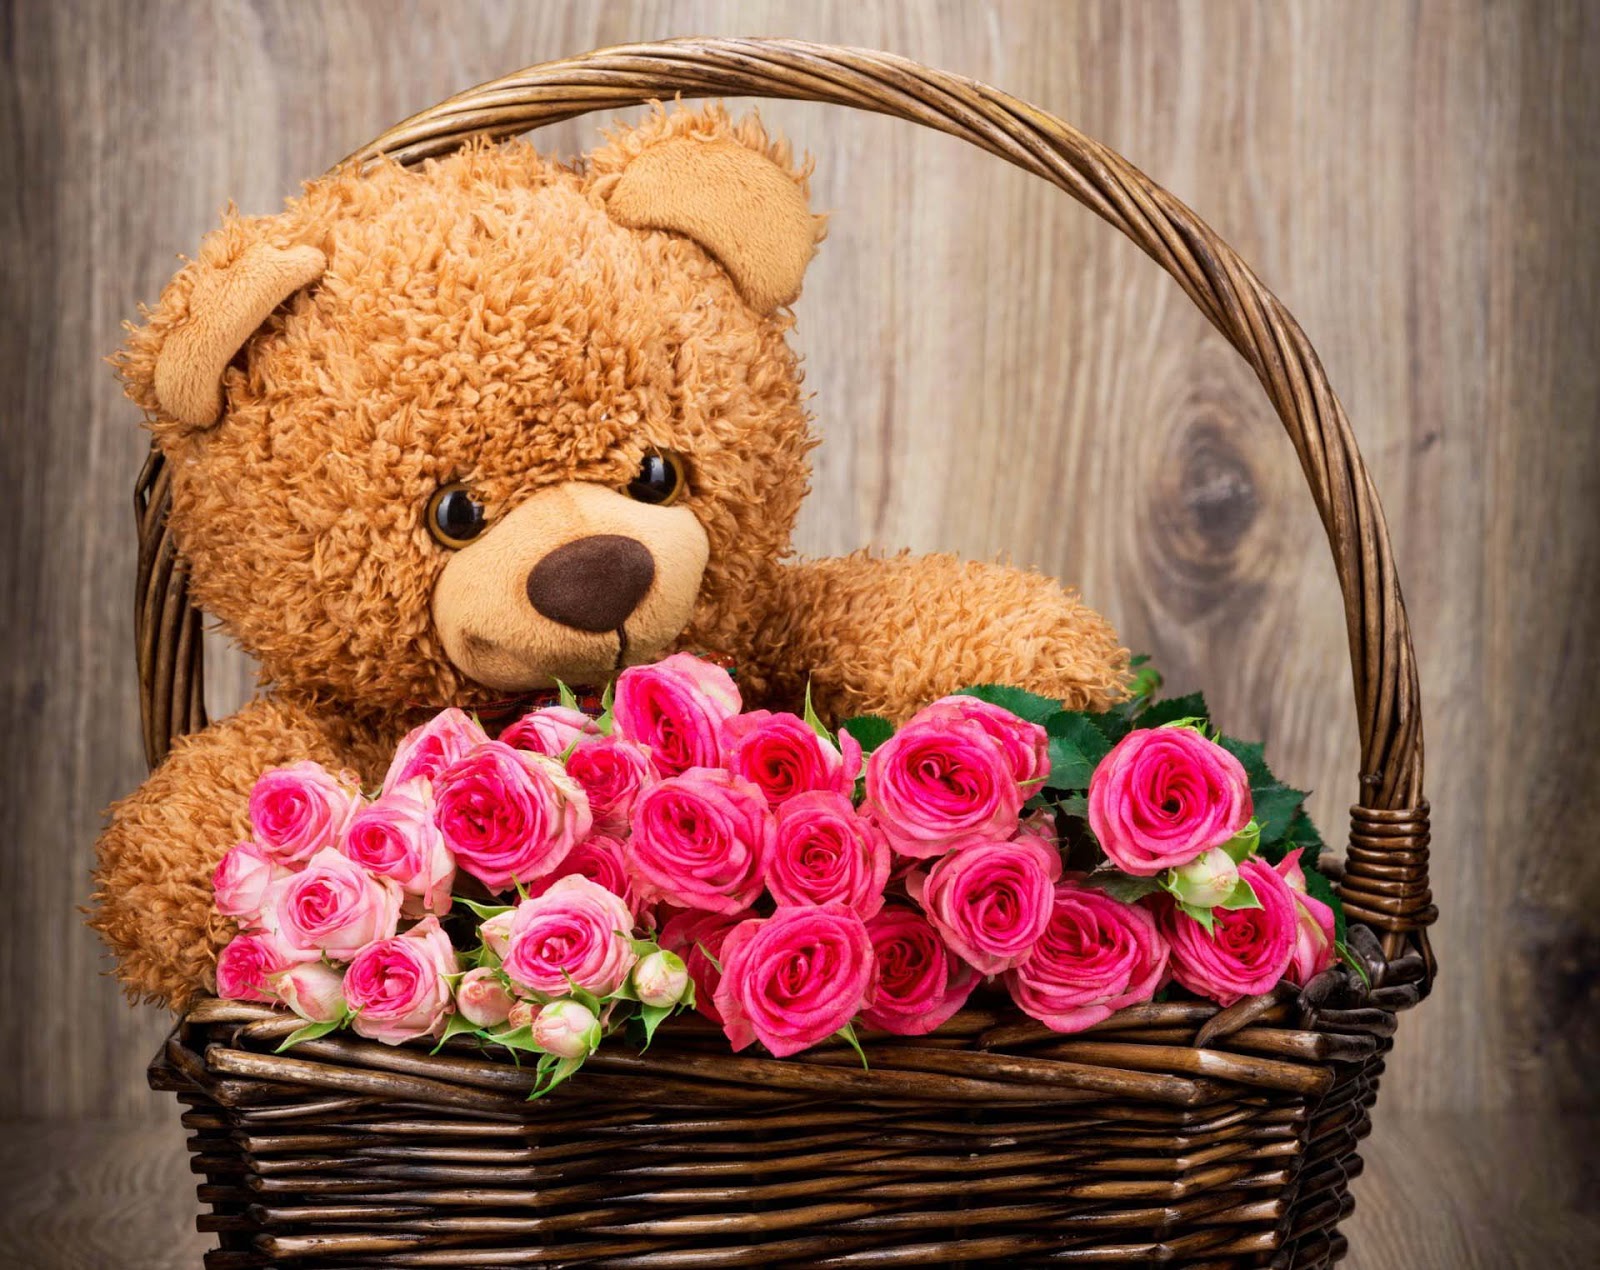 fonds d'écran ours en peluche avec des fleurs,ours en peluche,rose,fleurs coupées,fleur,panier cadeau